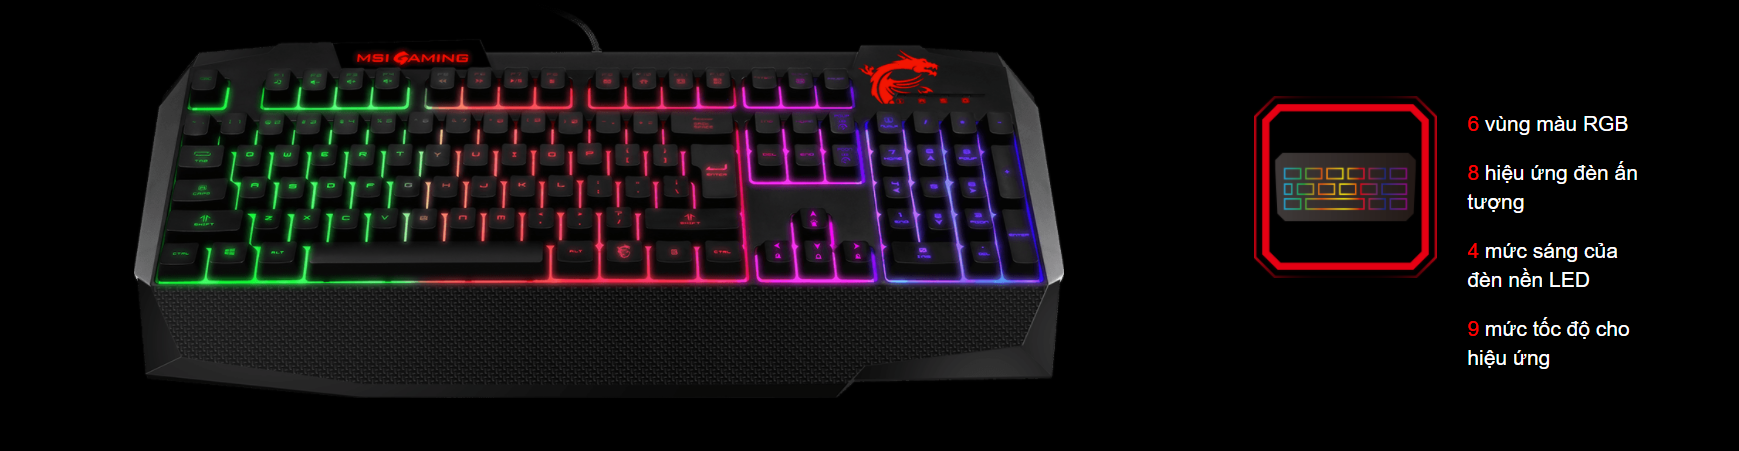 Bộ Keyboard MSI GAMING VIGOR GK40 có đèn led nhiều màu bắt mắt